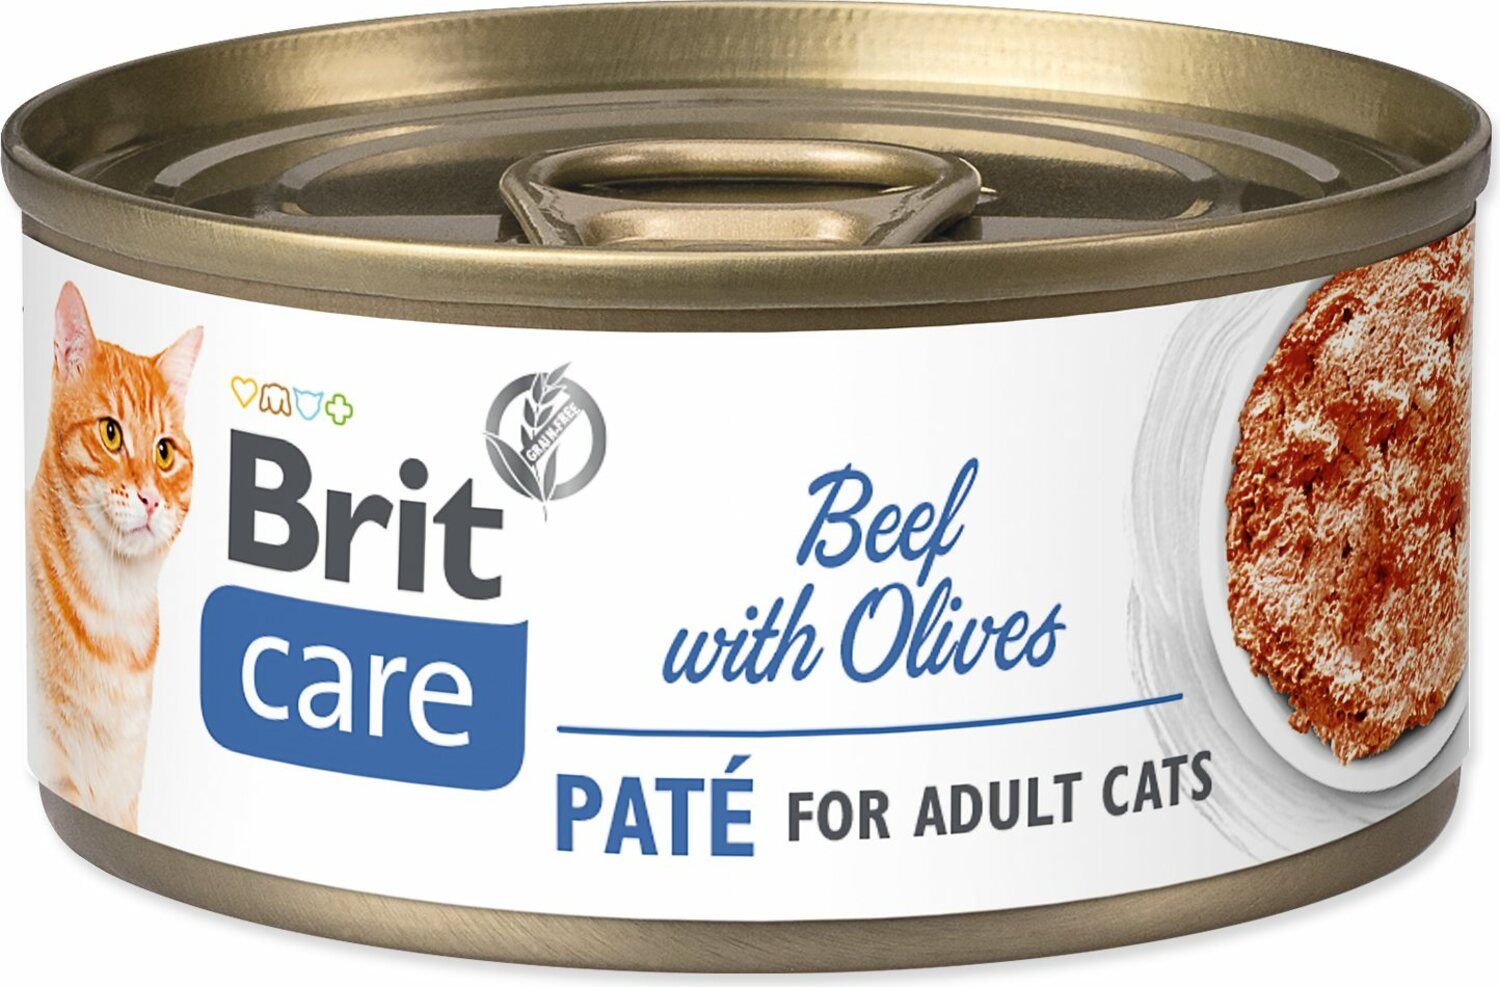 Konzerva Brit Care Cat hovězí s olivami, paté 70g